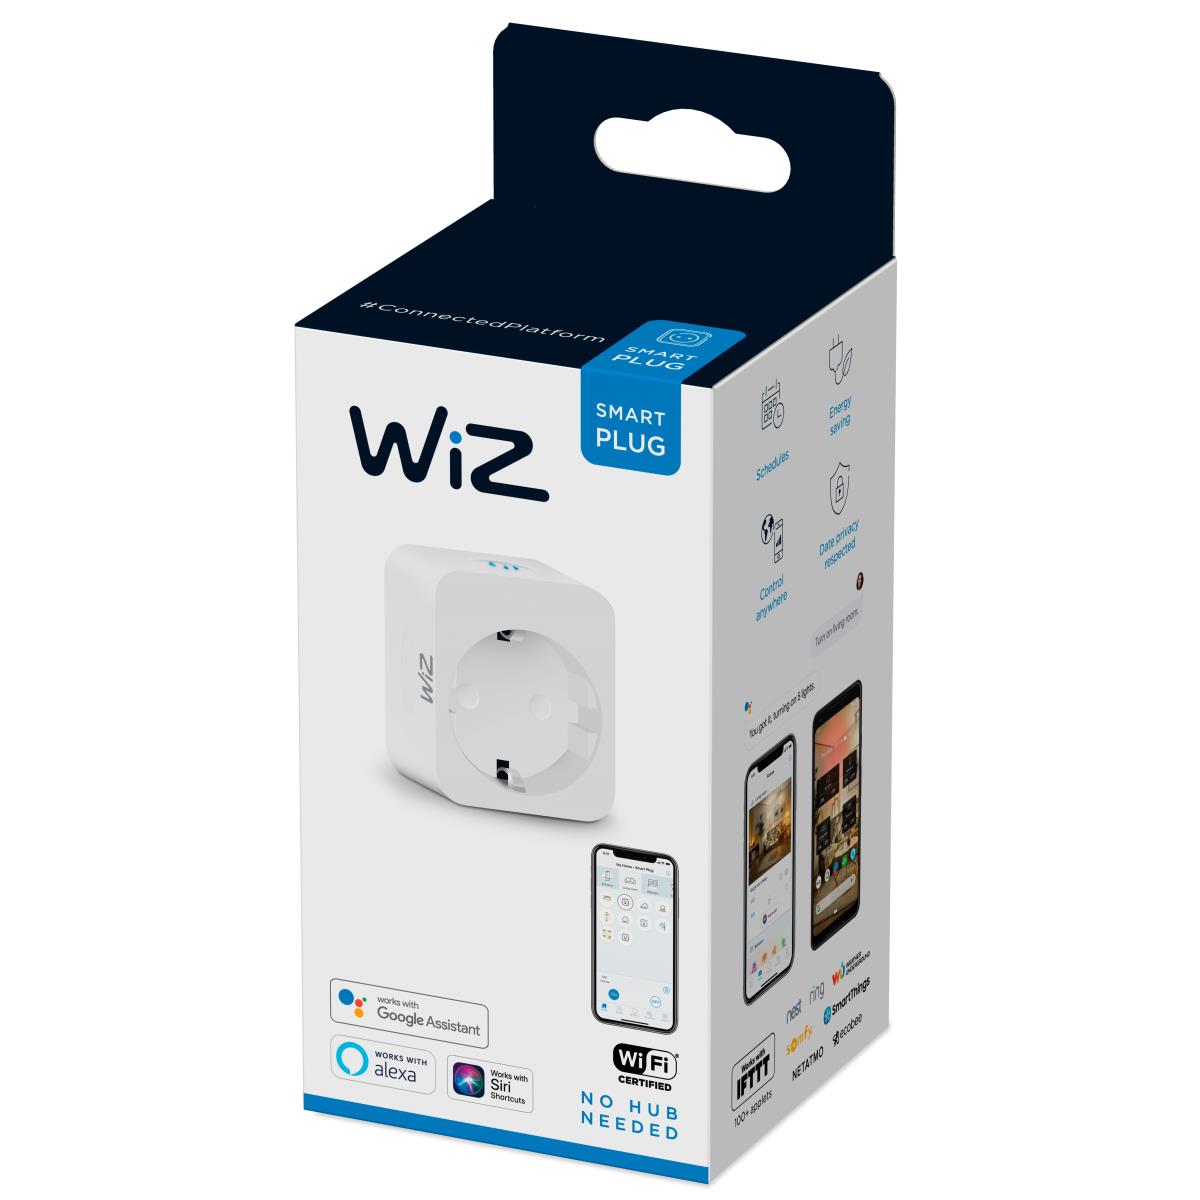 WiZ: WiFi Smart Plug